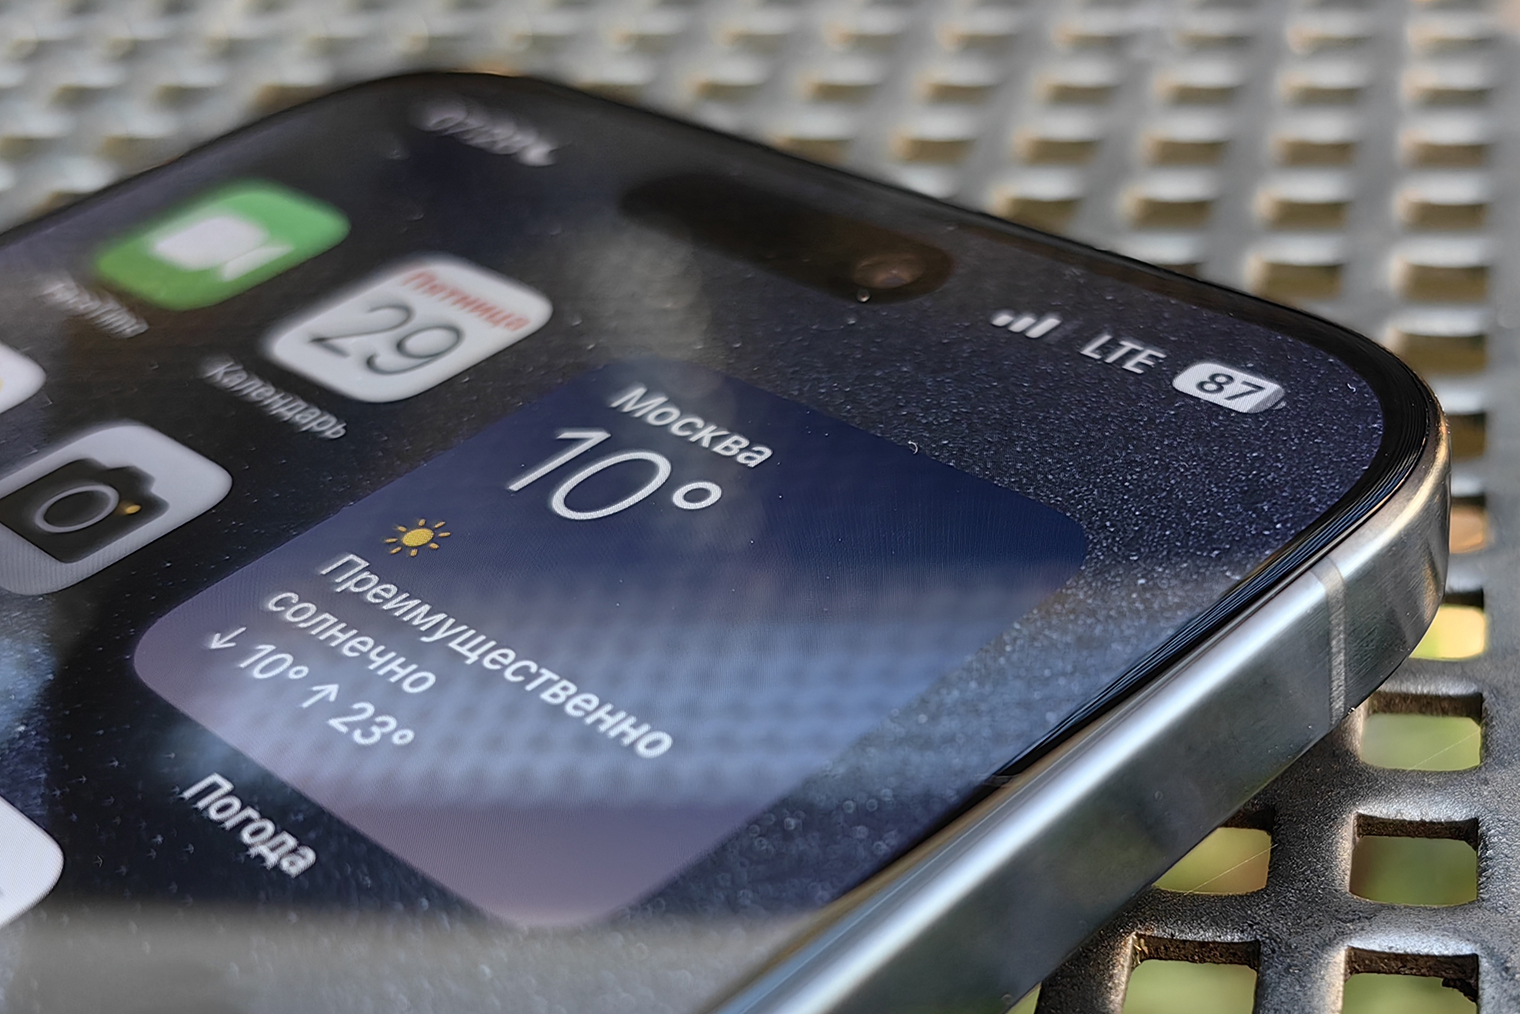 iPhone 15 Pro Max синего цвета меняет оттенок в зависимости от освещения. Иногда он кажется скорее серым, а иногда — насыщенно синими или даже черным